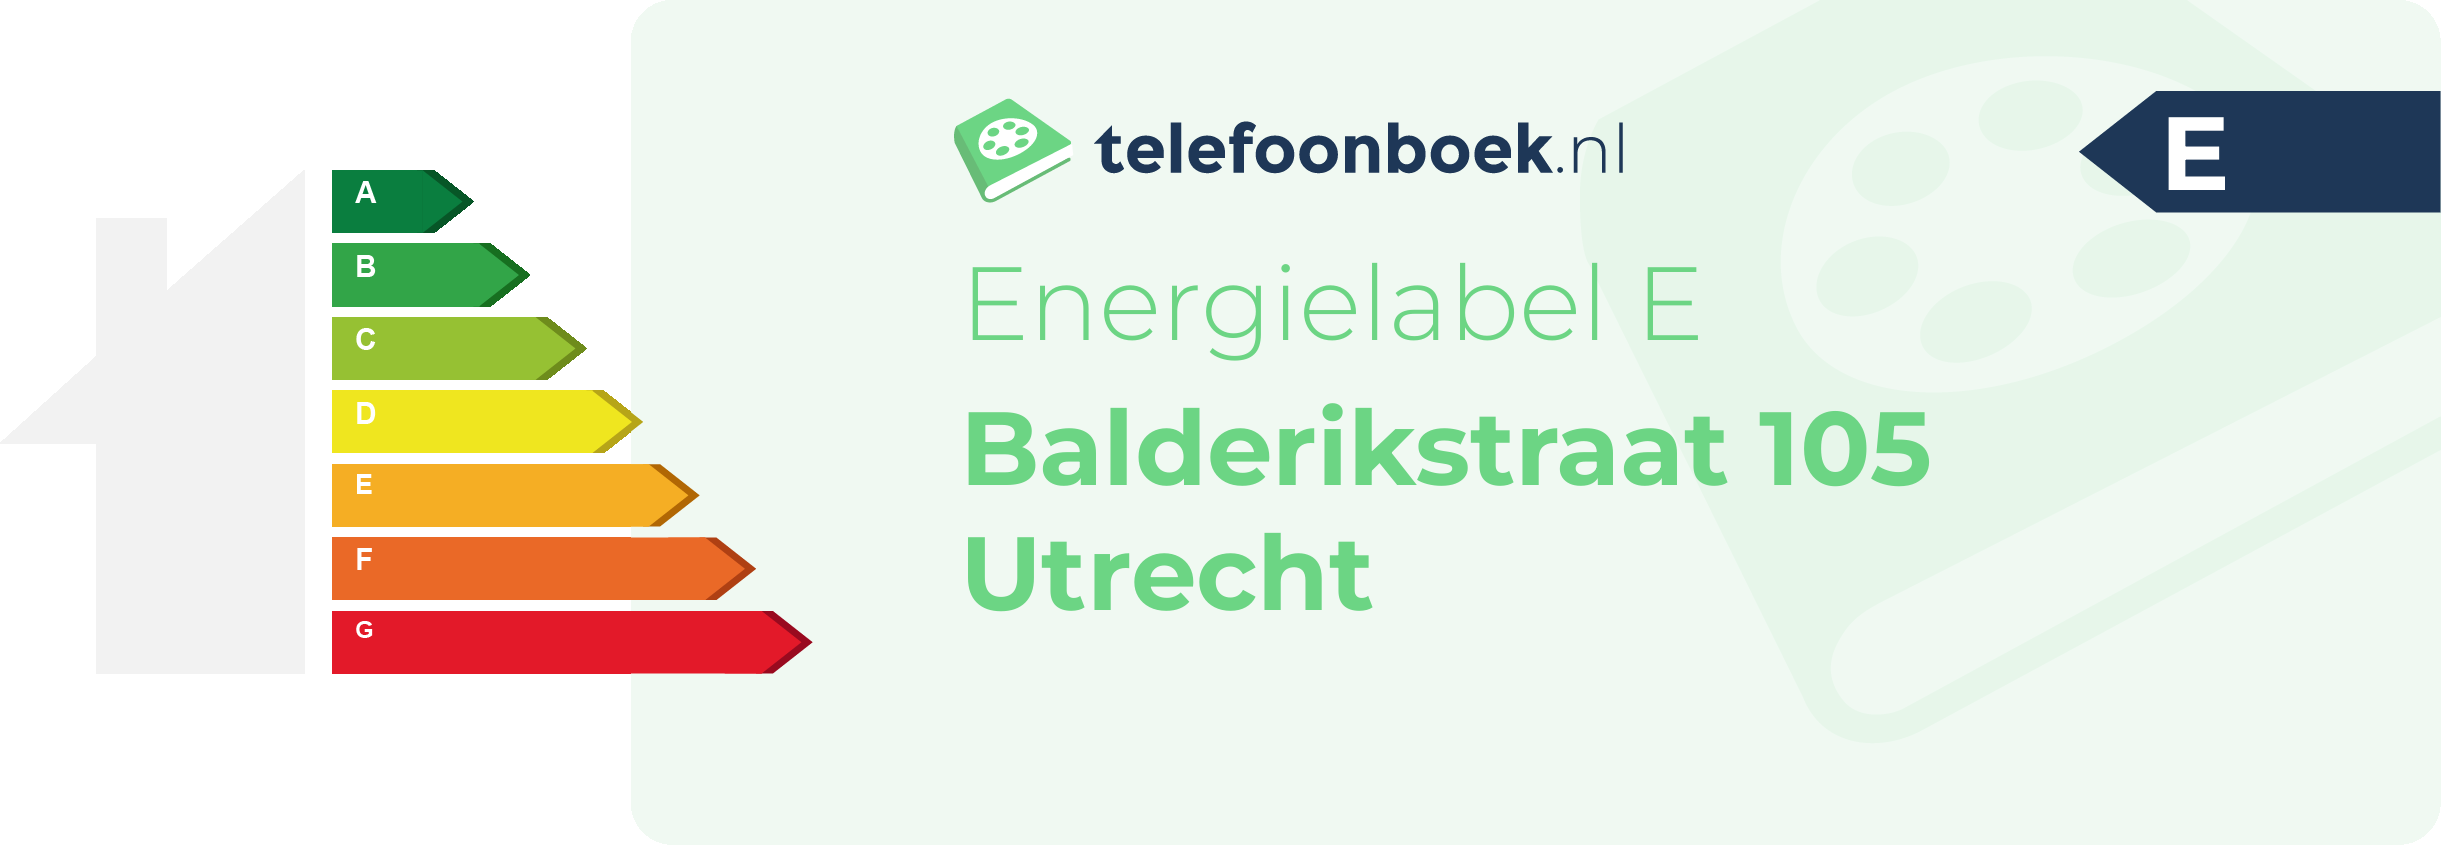 Energielabel Balderikstraat 105 Utrecht